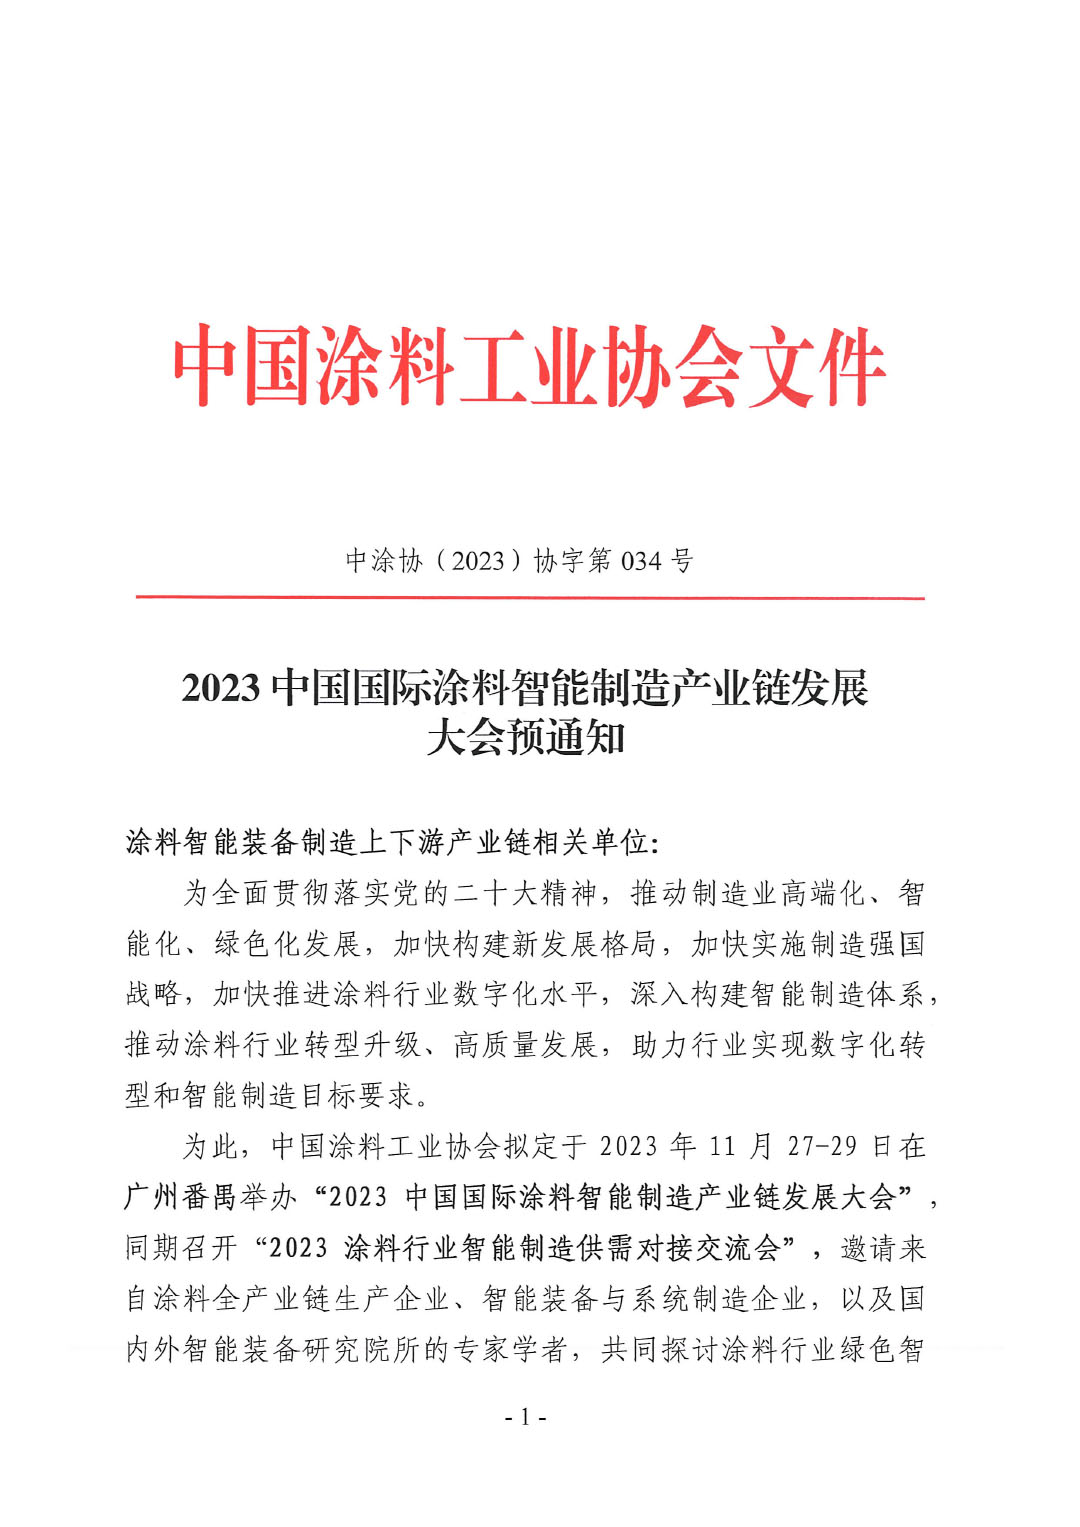 2023中国国际涂料智能制造产业链发展大会预通知0920-1